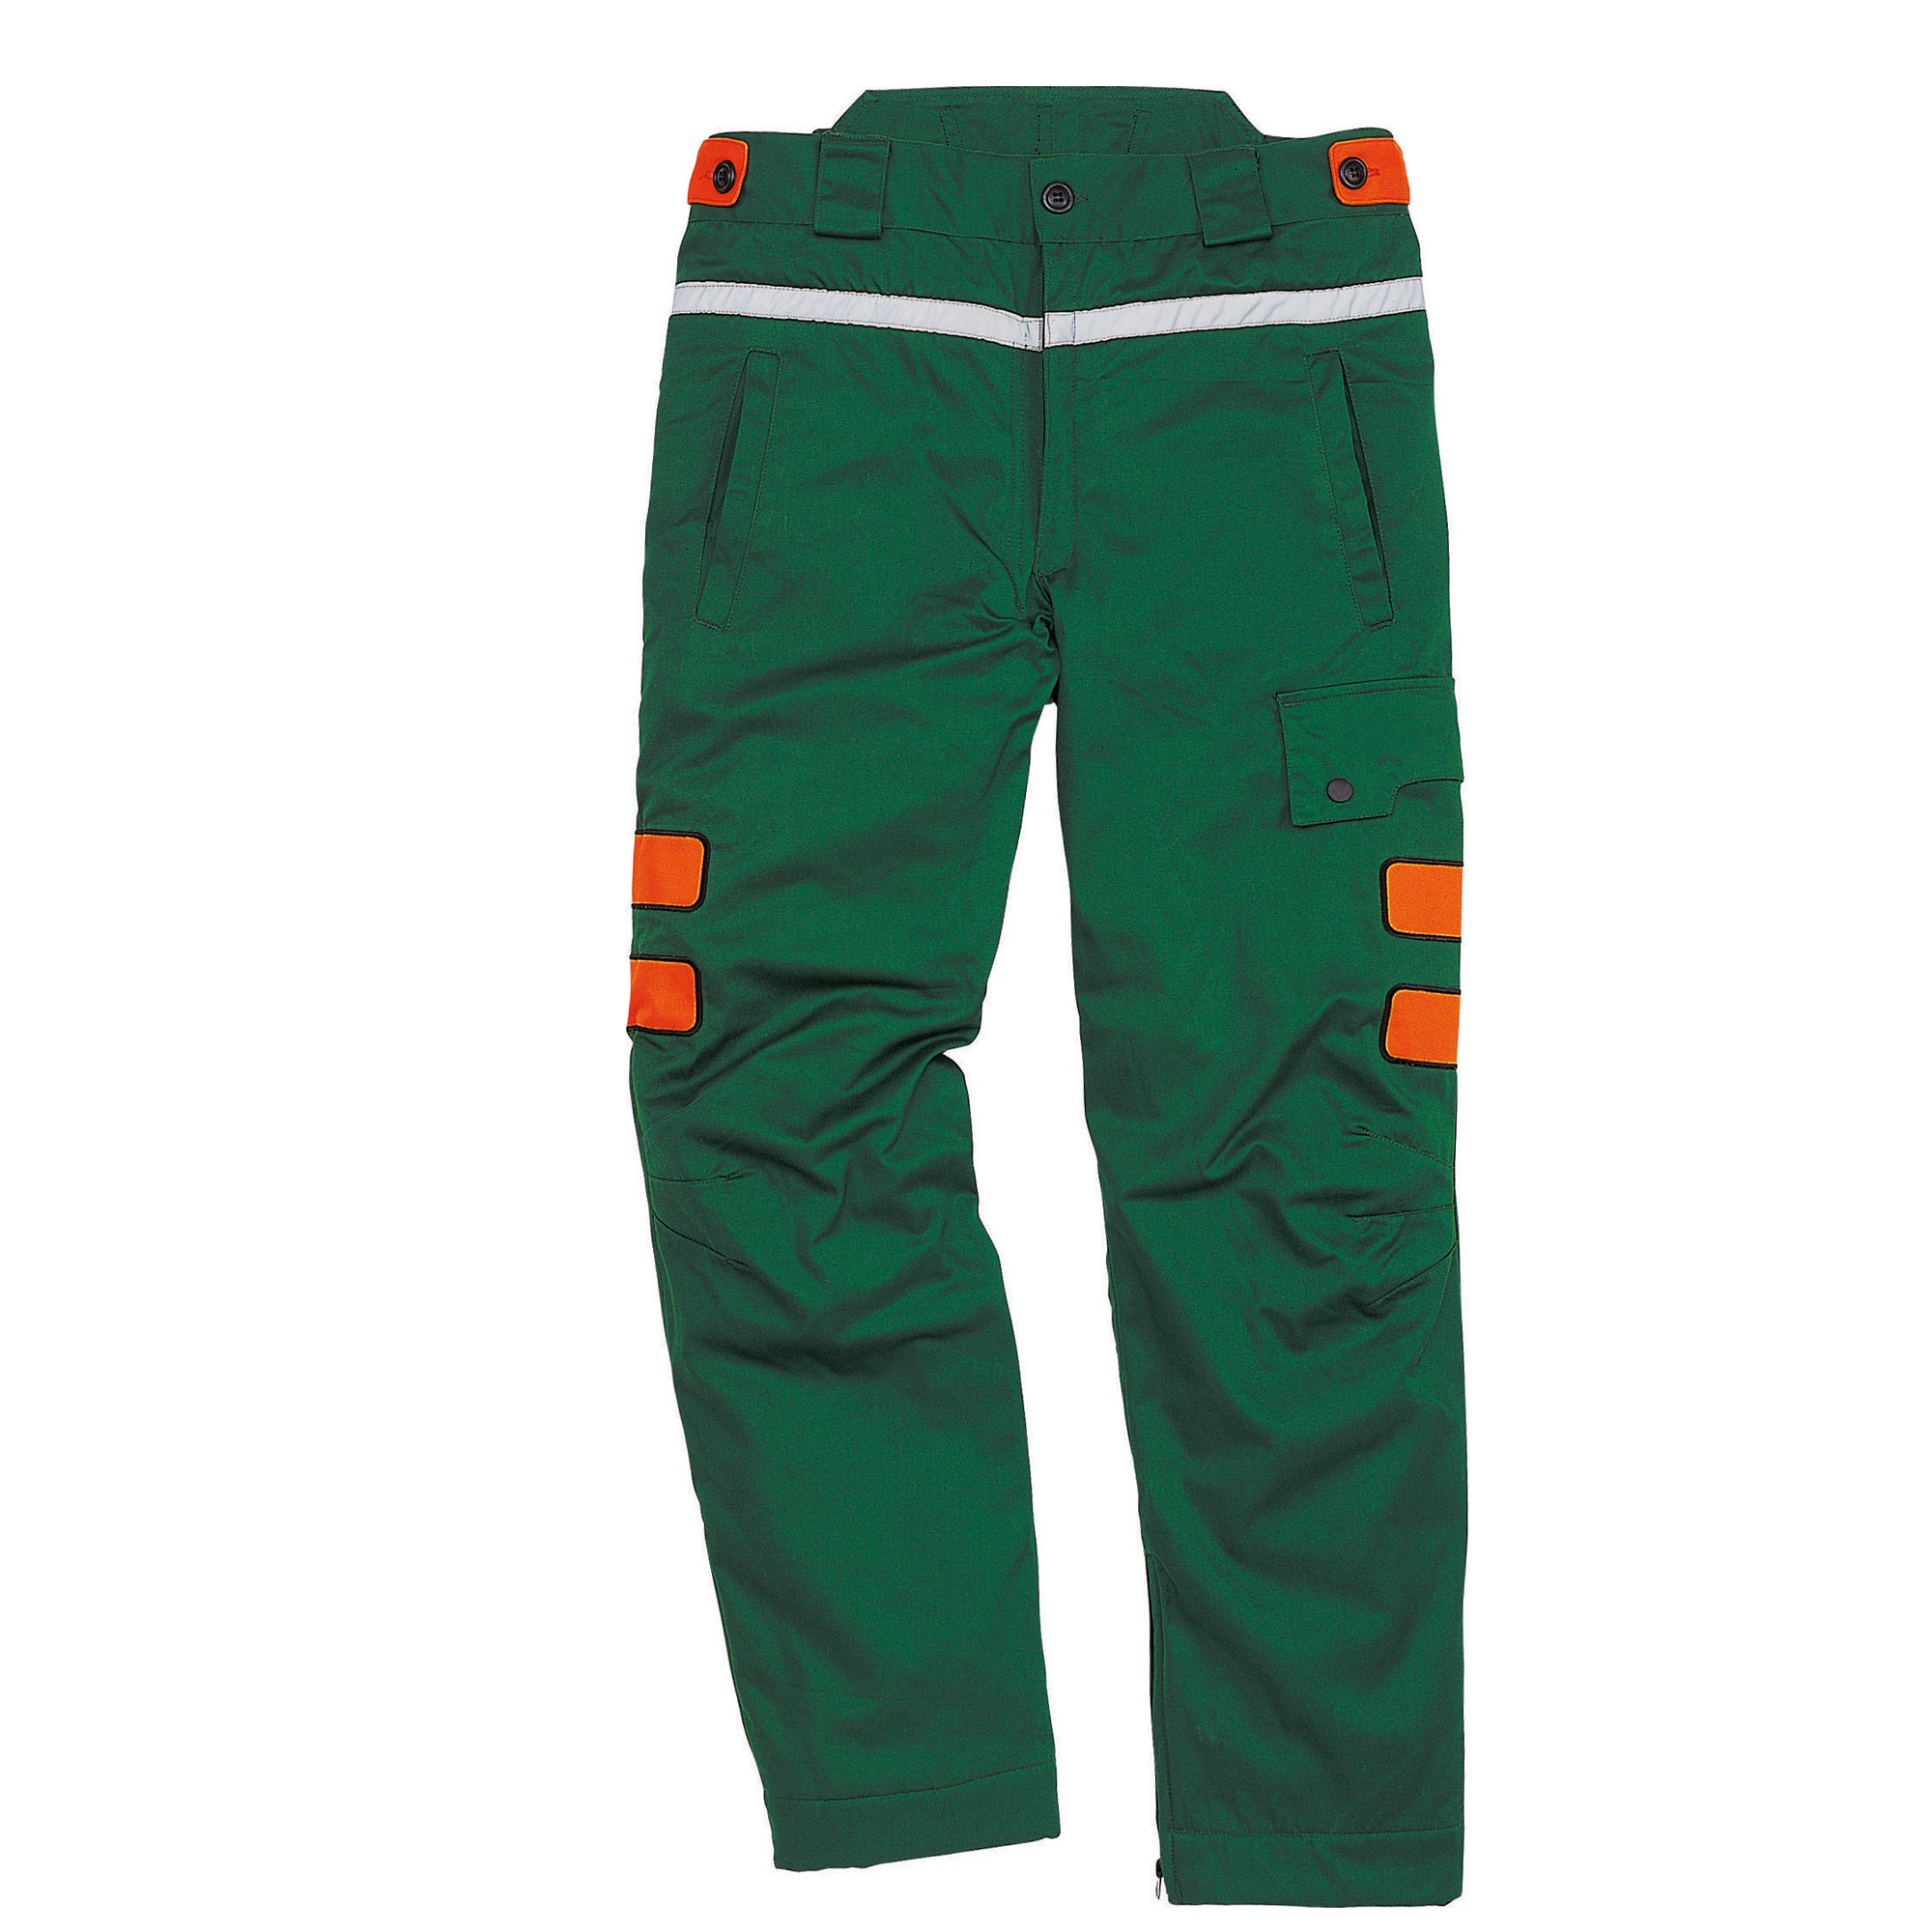 Pantalone Meleze3 - per boscaiolo - taglia L - verde/arancio - Deltaplus